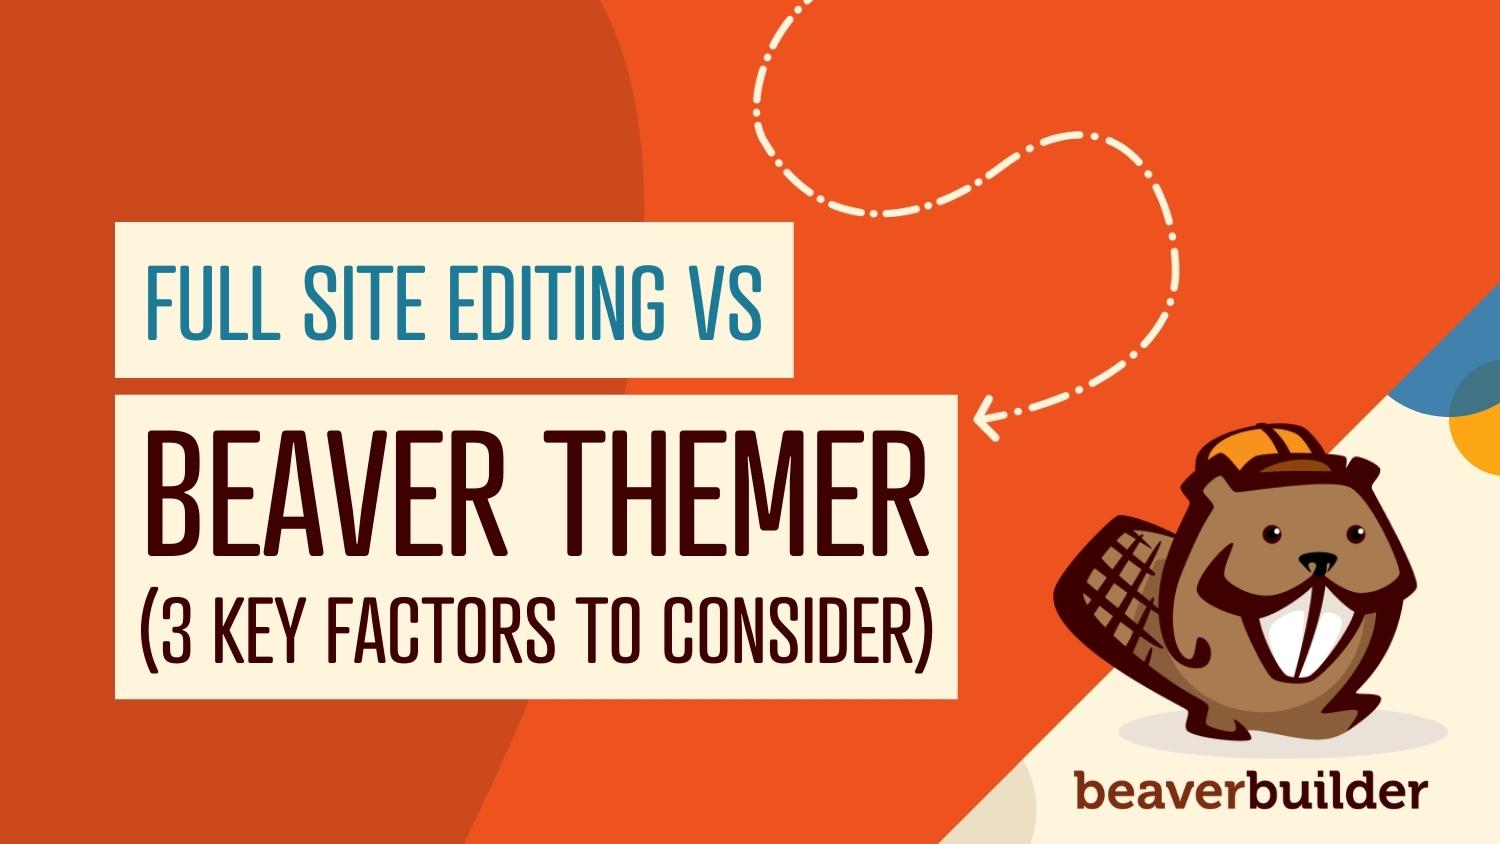 Beaver Themer vs Gutenberg's Full Site Editor